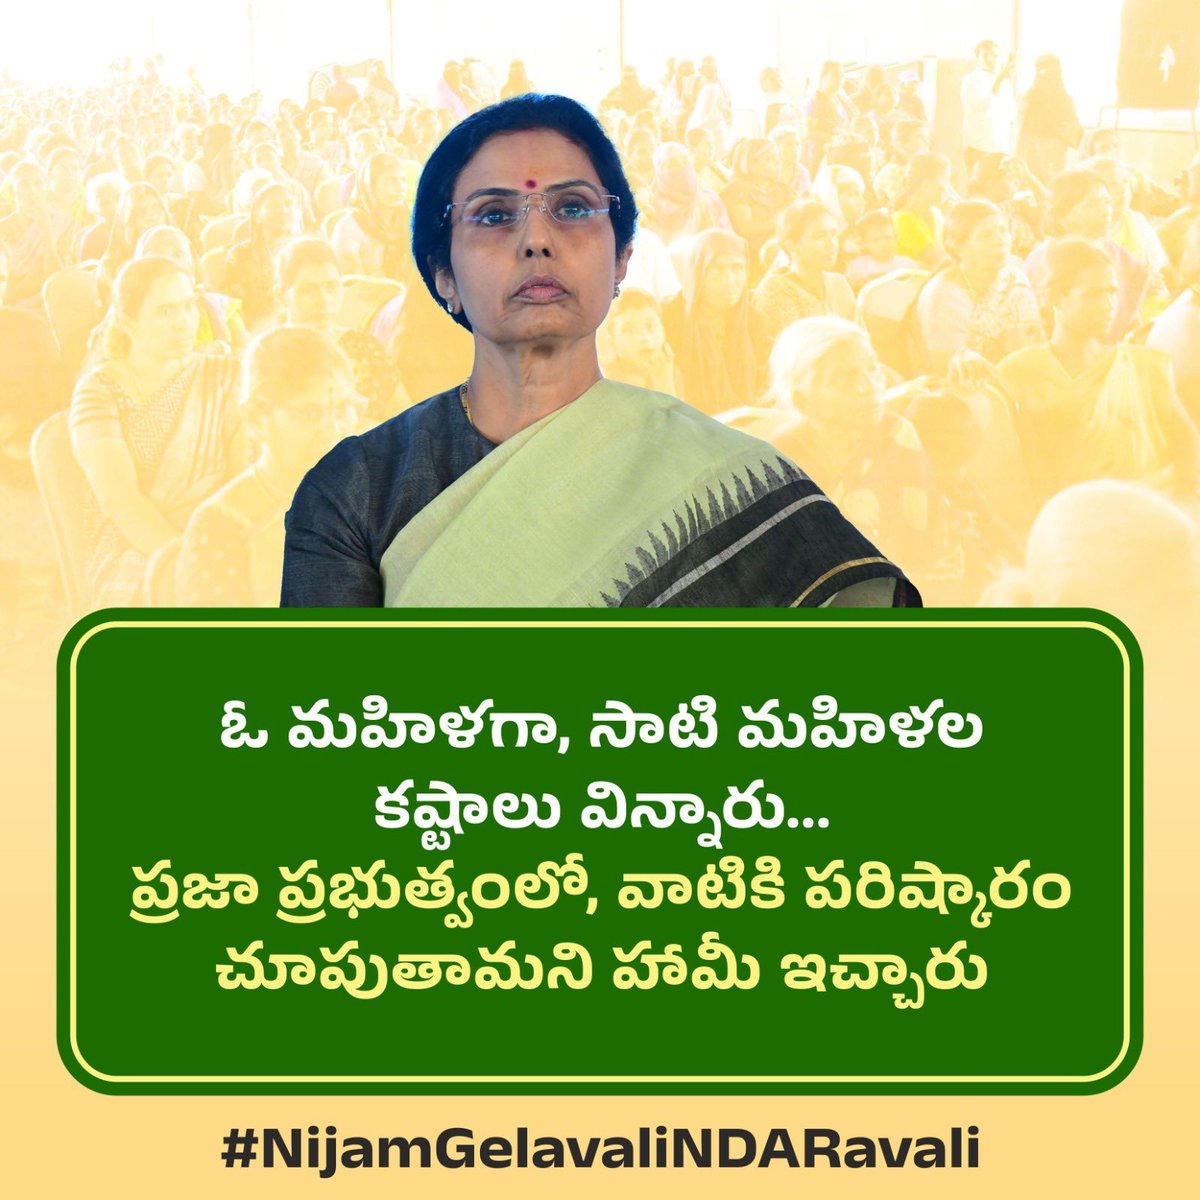 నిజం గెలవాలి ! 

#NijamGelavaliNDARavali #hopekuppamcbn
#NaraBhuvaneshwari
#AndhraPradesh
#itdpkuppam